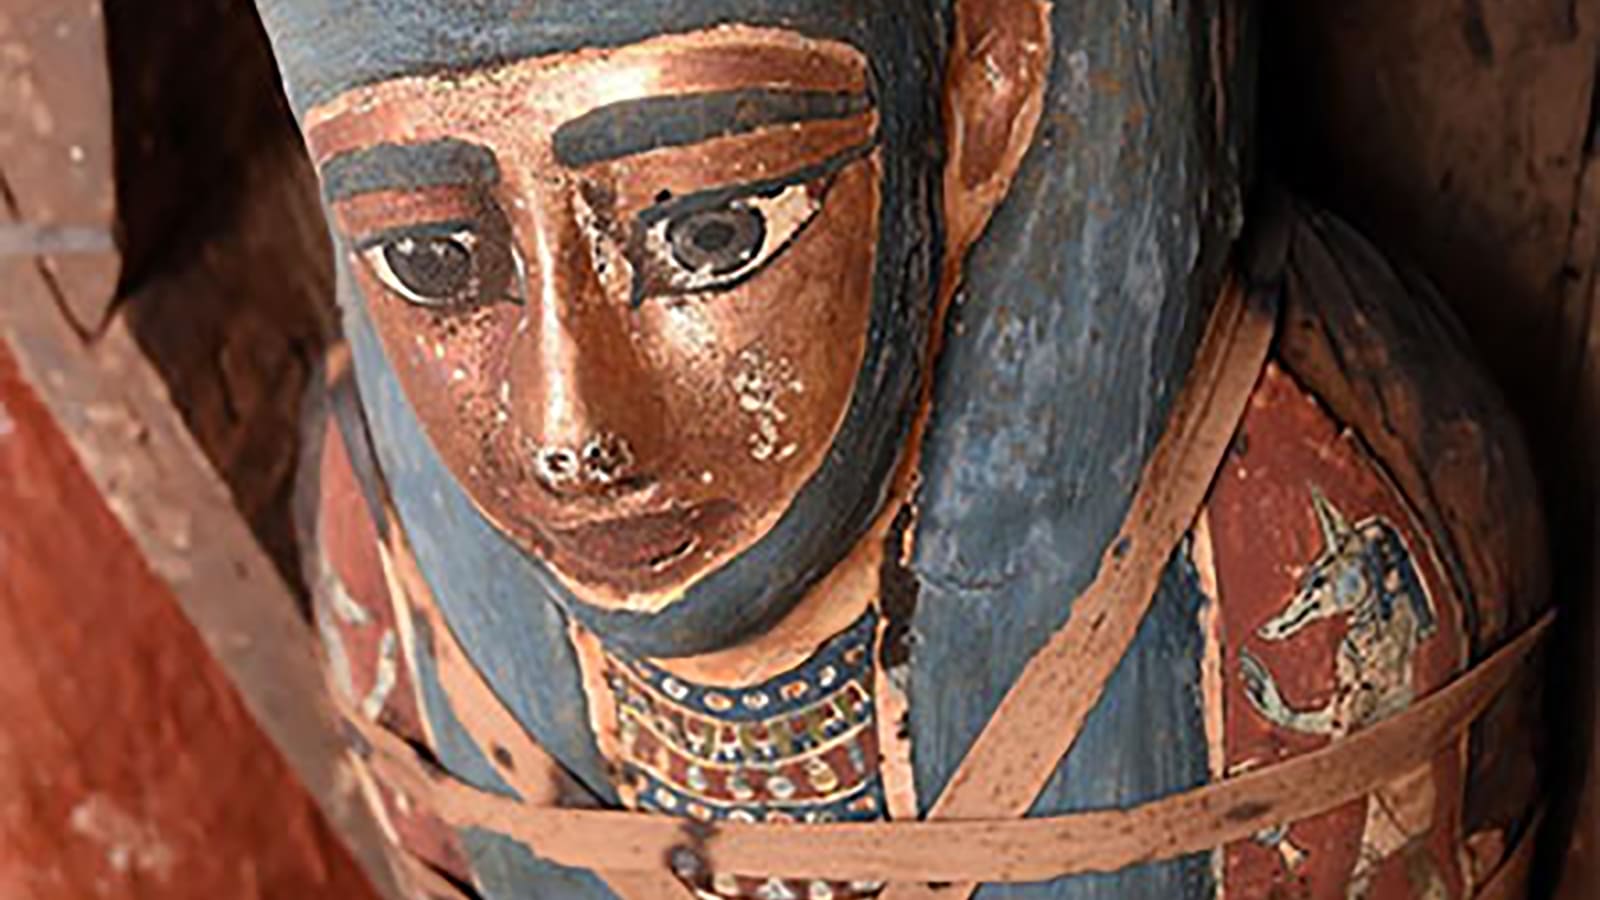 بينها مومياء مصرية لطفل.. متحف بريطاني يزيل بقايا بشرية في "عملية إنهاء الاستعمار"